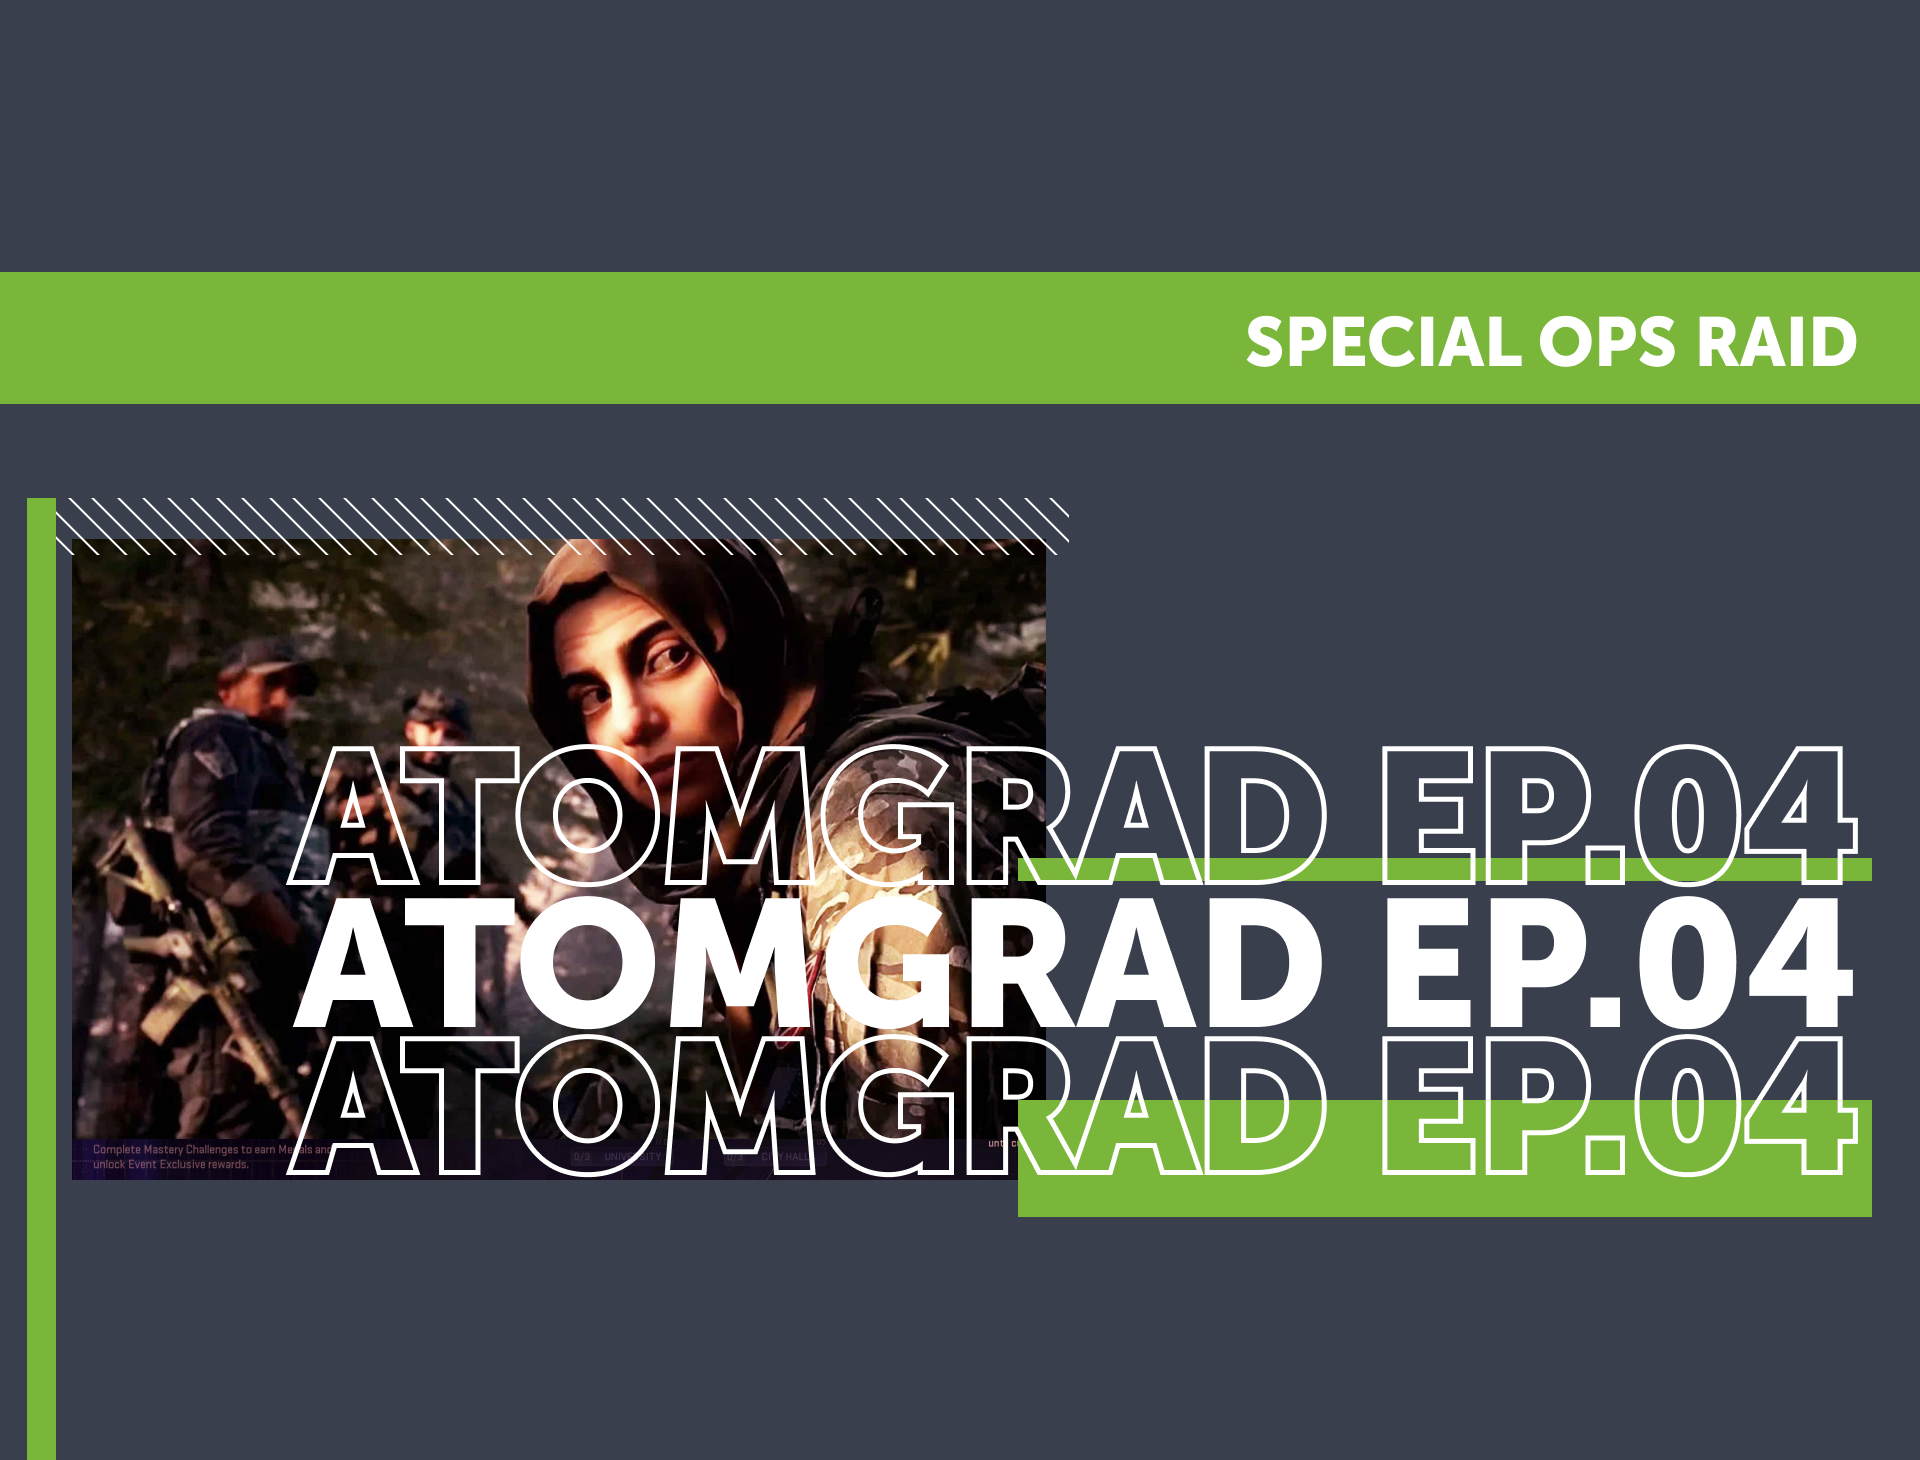 Atomgrad Special Ops Raid EP 04